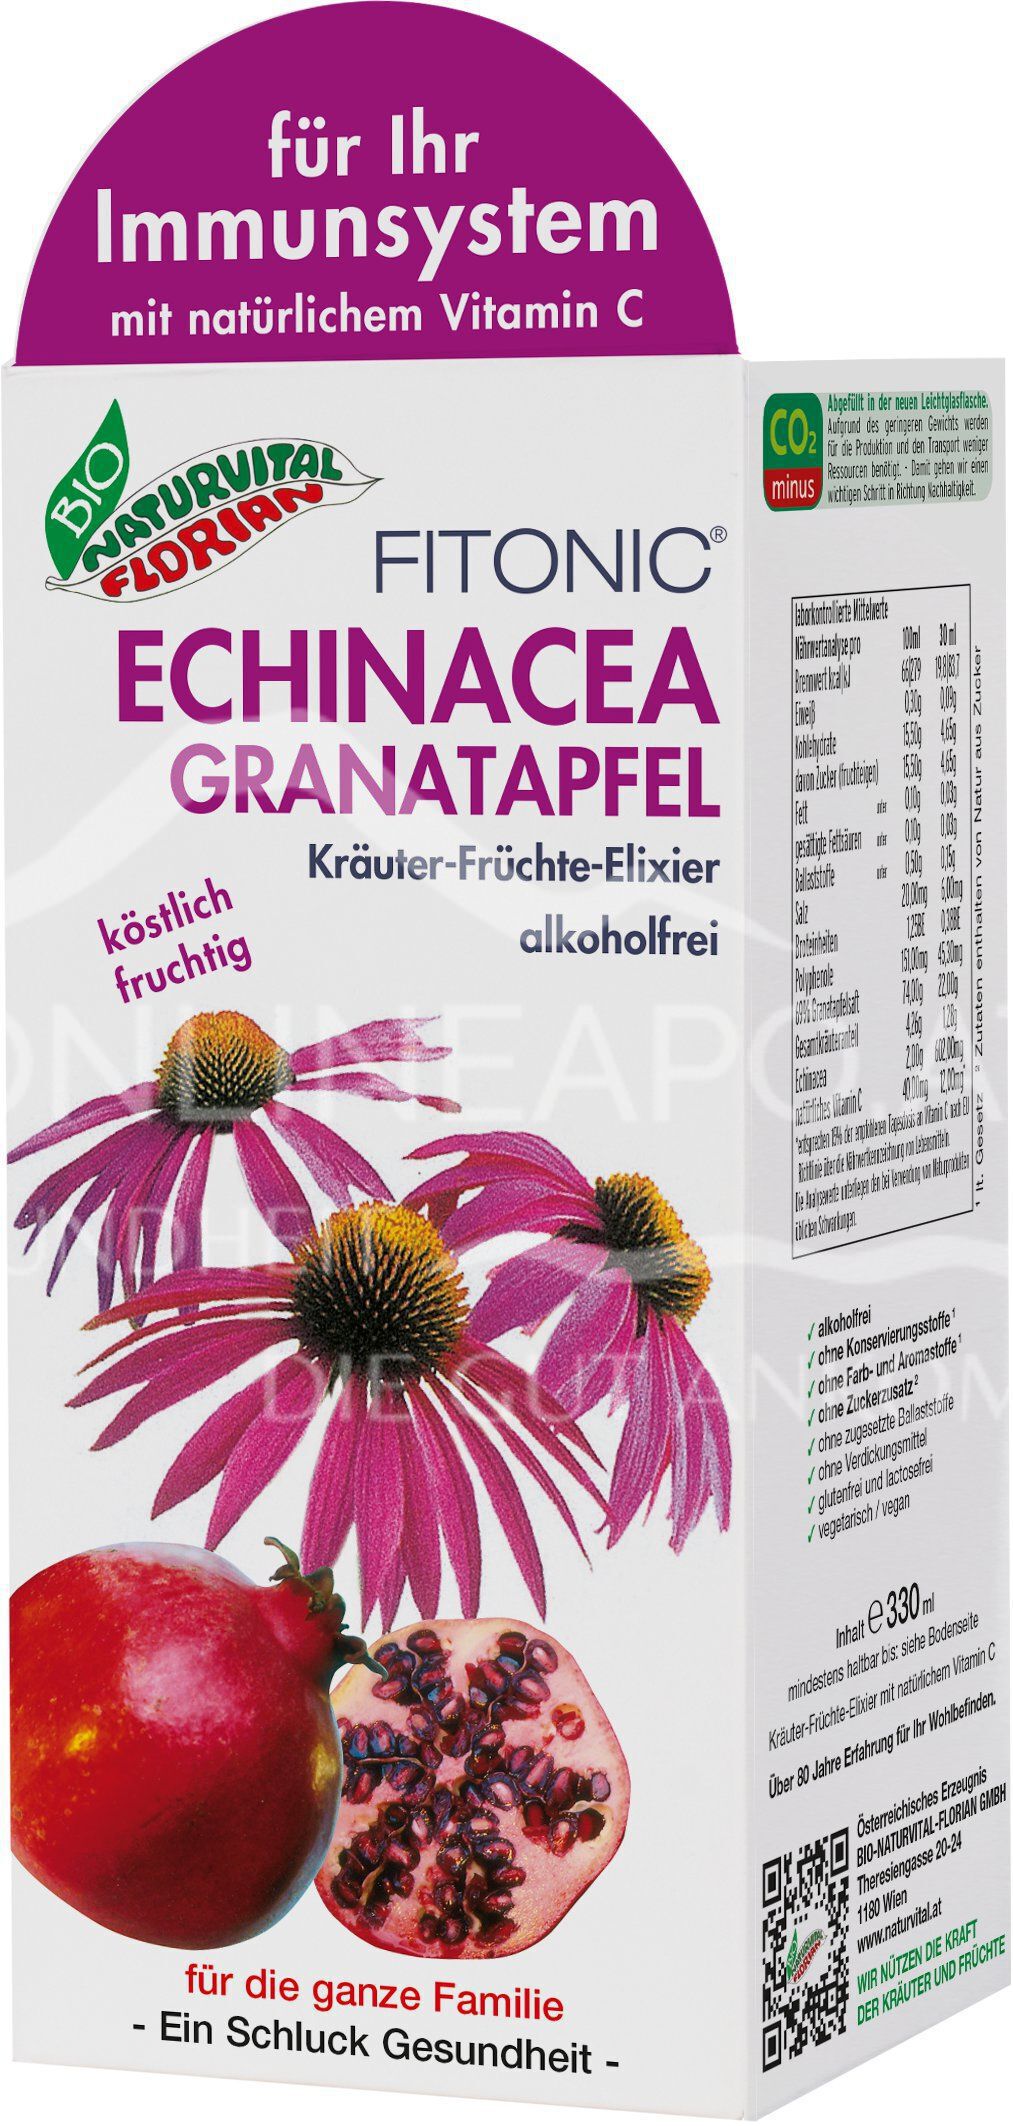 Bio Naturvital Florian Fitonic Echinacea Granatapfel Kräuter-Früchte-Elixier